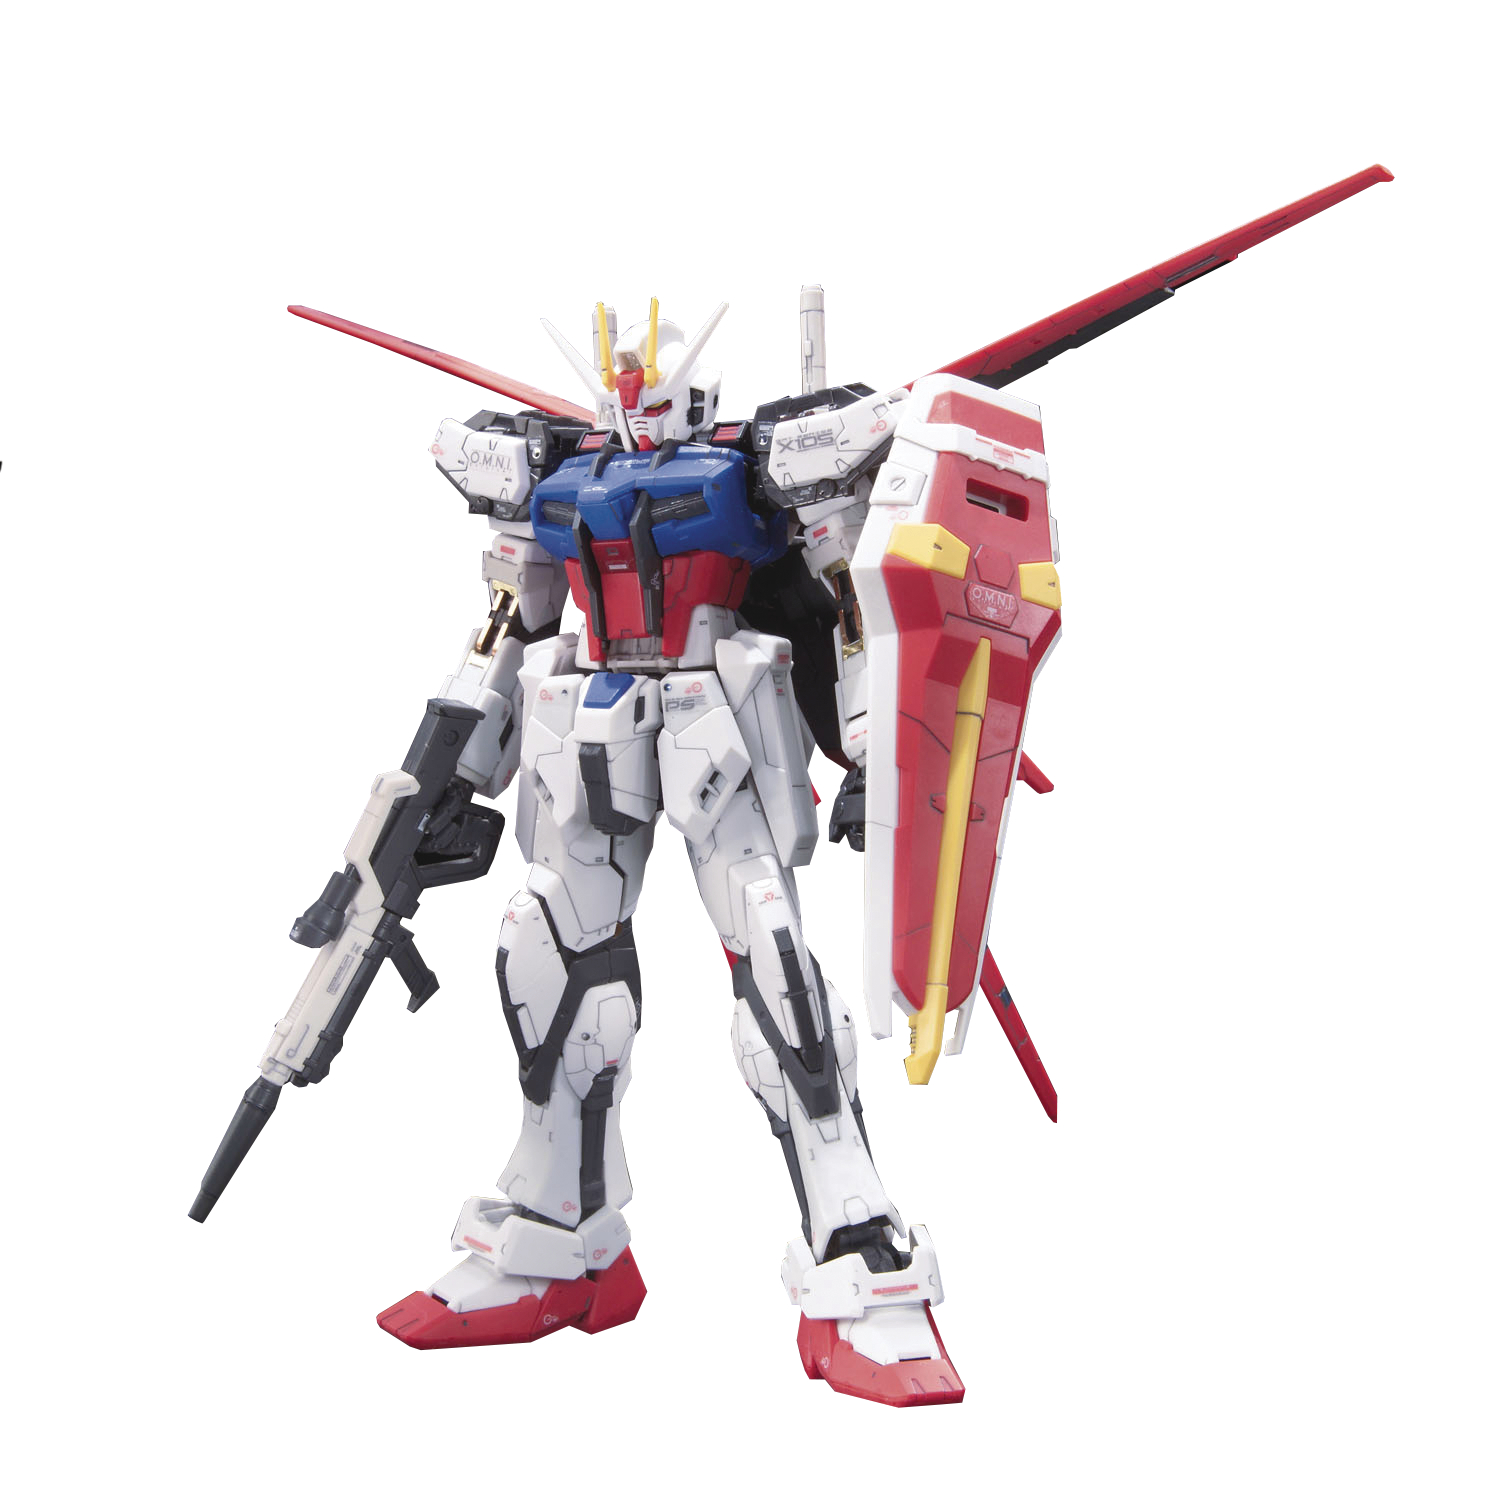 Gundam Aile Strike Rg 1/144 Model Kit